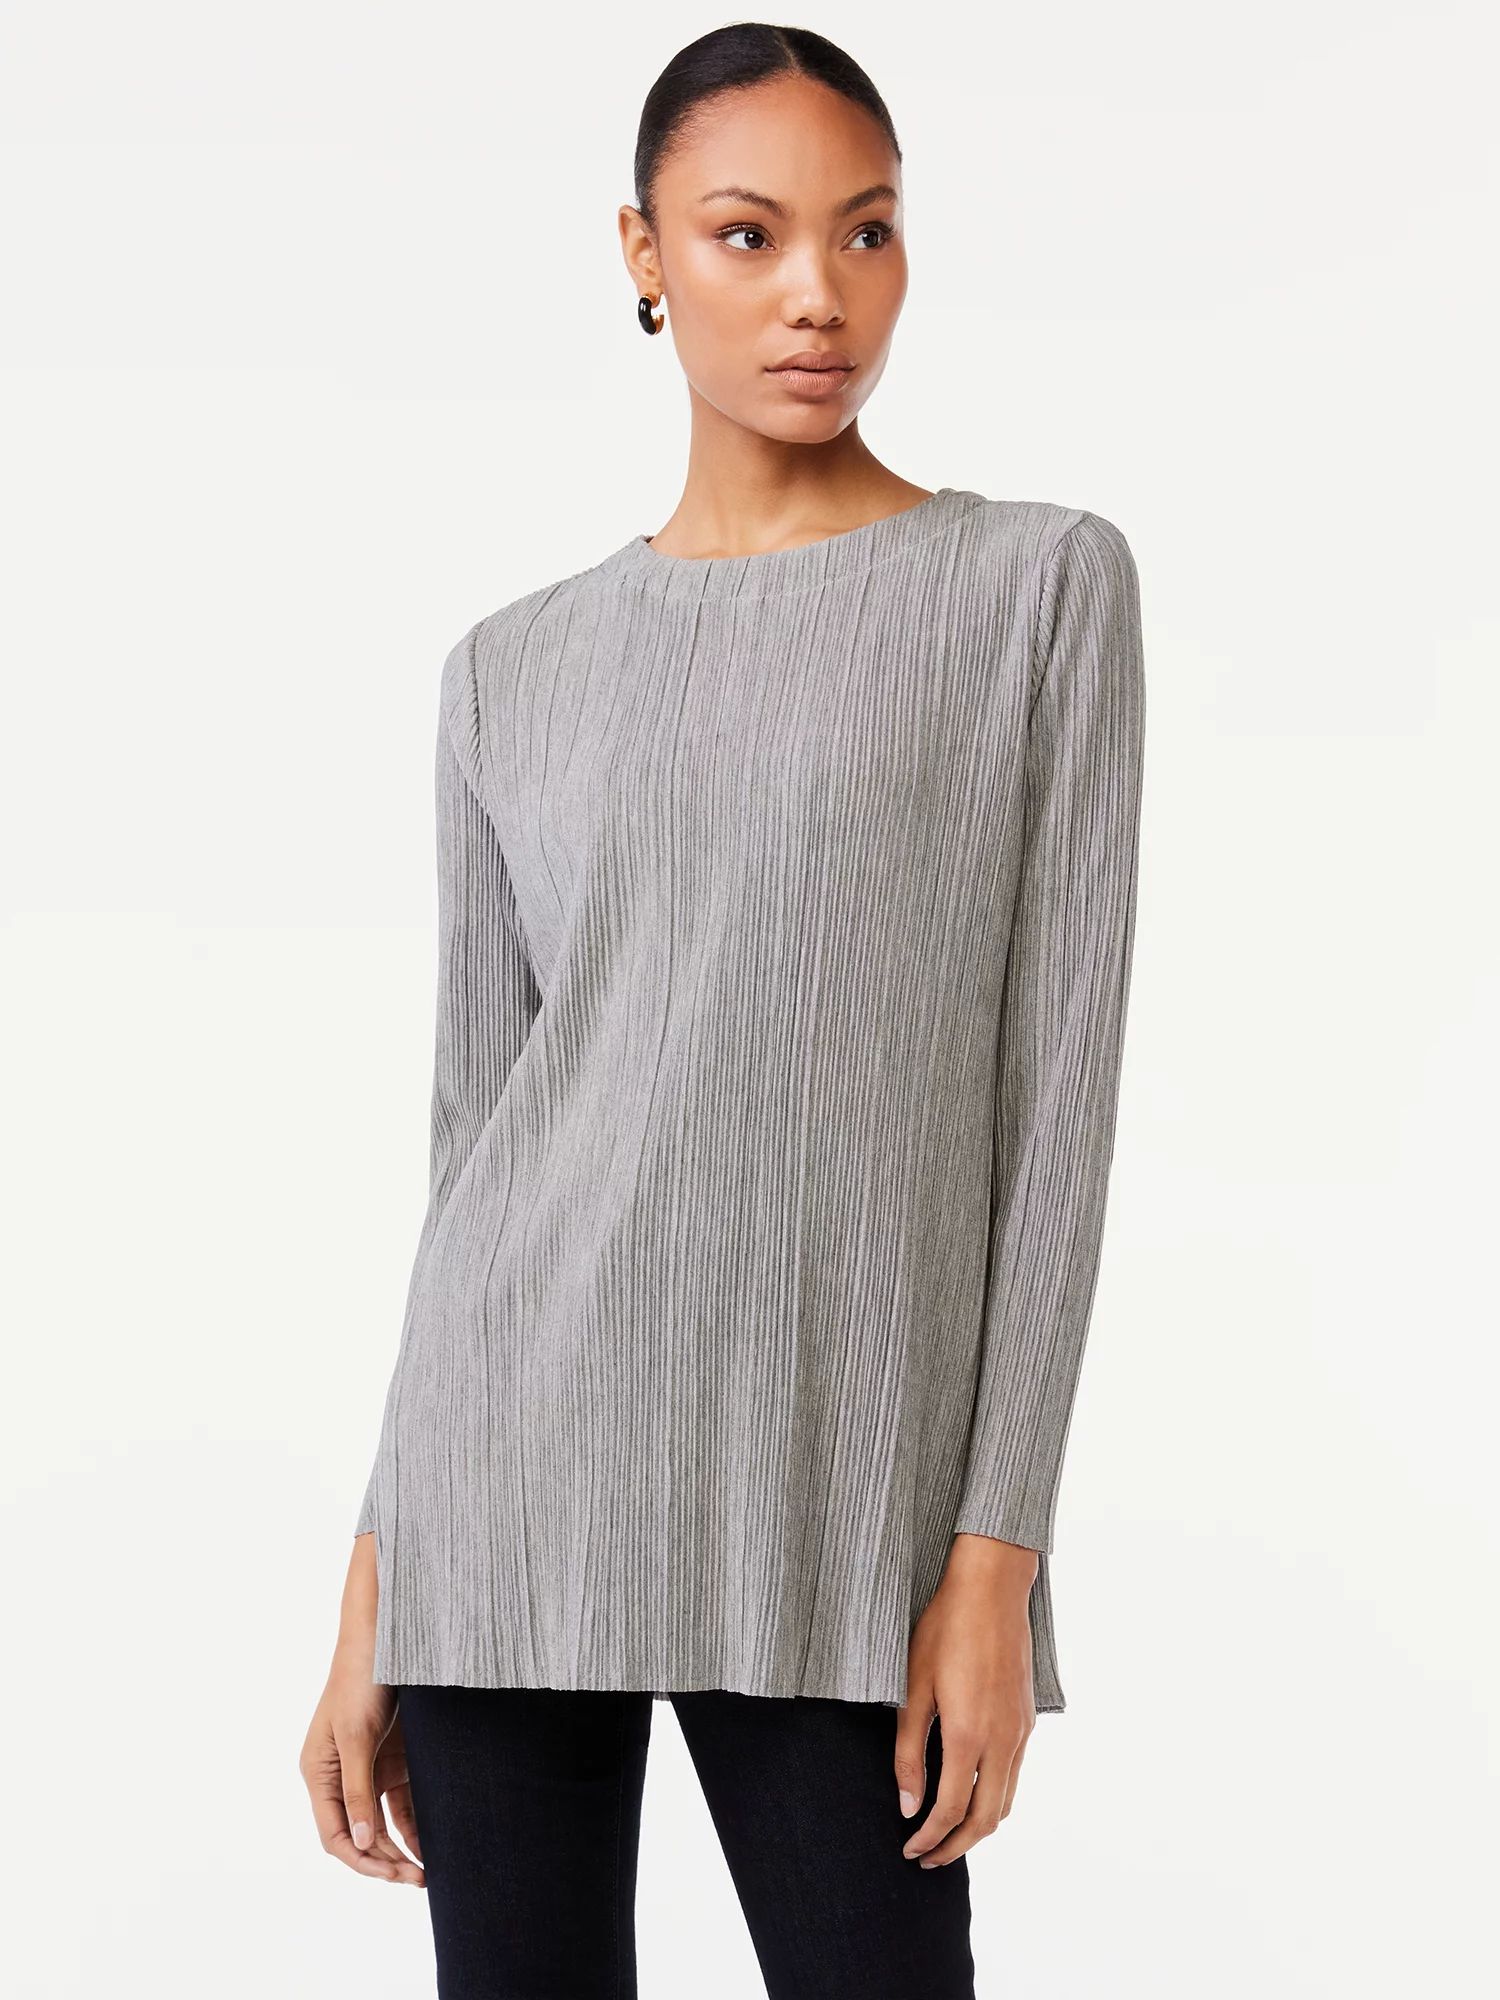 Scoop Women's Crinkle Knit Tunic Top | Walmart (US)